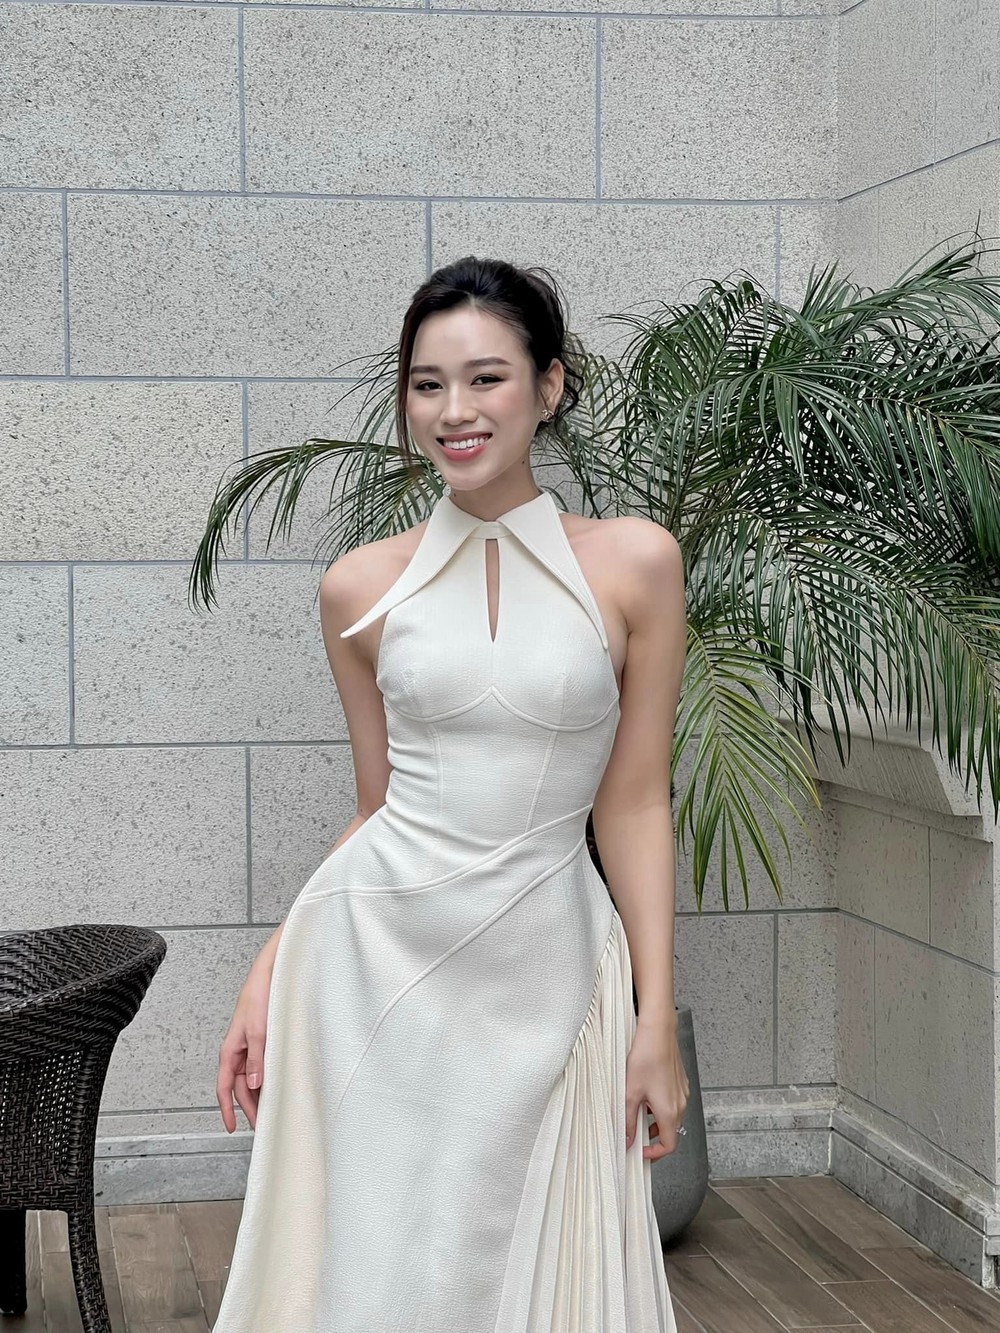 Hoa hậu Đỗ Thị Hà chuộng váy siêu ngắn, khoe chân dài 1m11 - Ảnh 9.